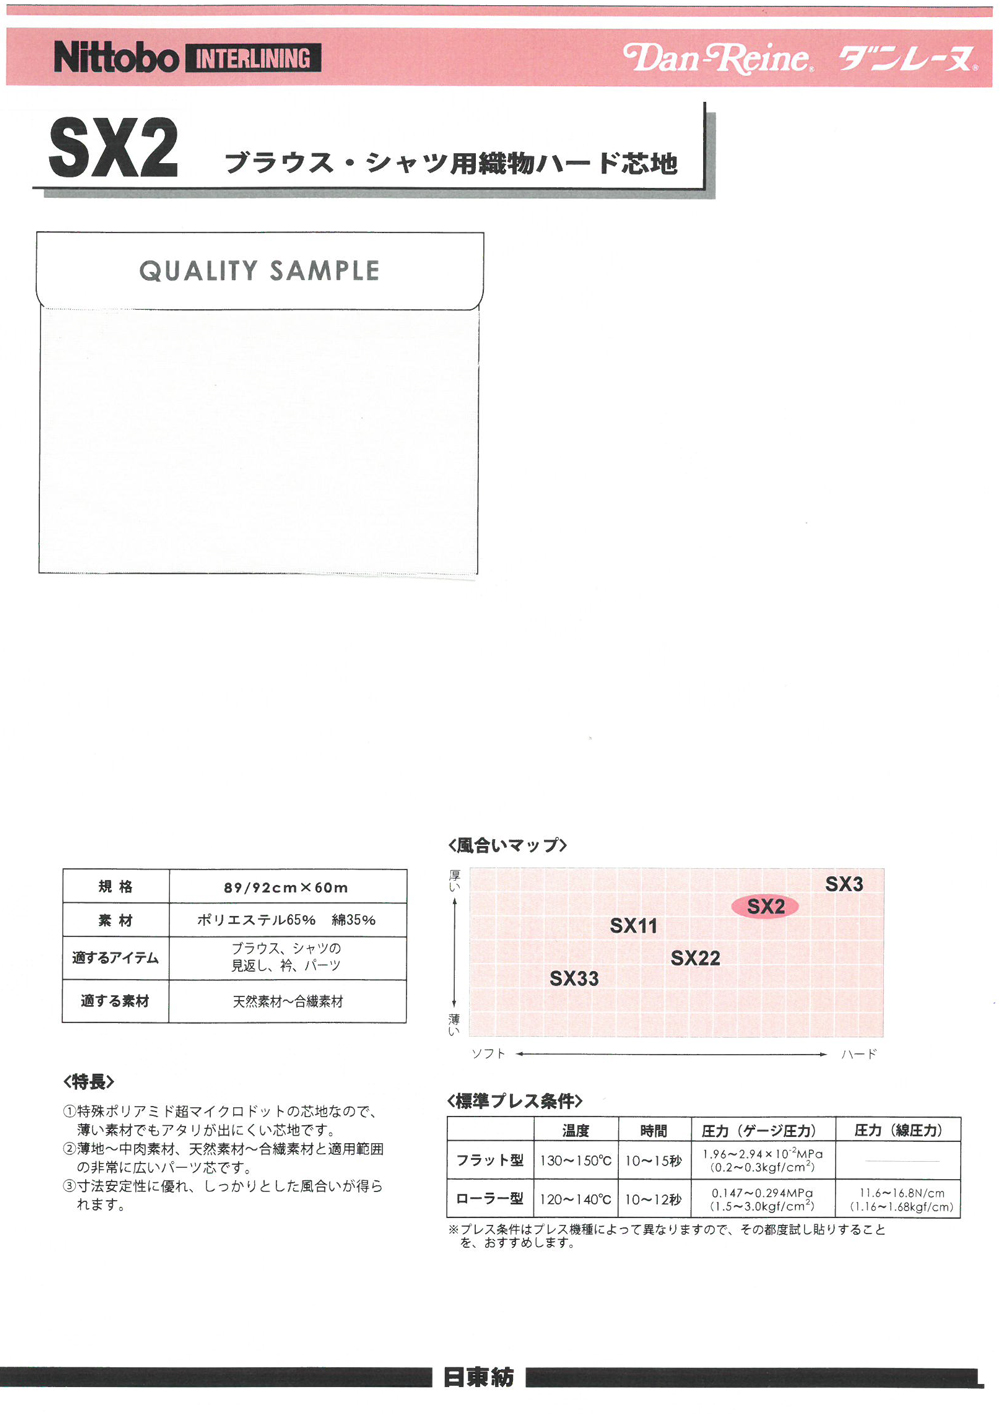 SX2 블라우스 셔츠 직물 하드 코어 45/[심지] 닛토보 (닛토보인터라이닝)